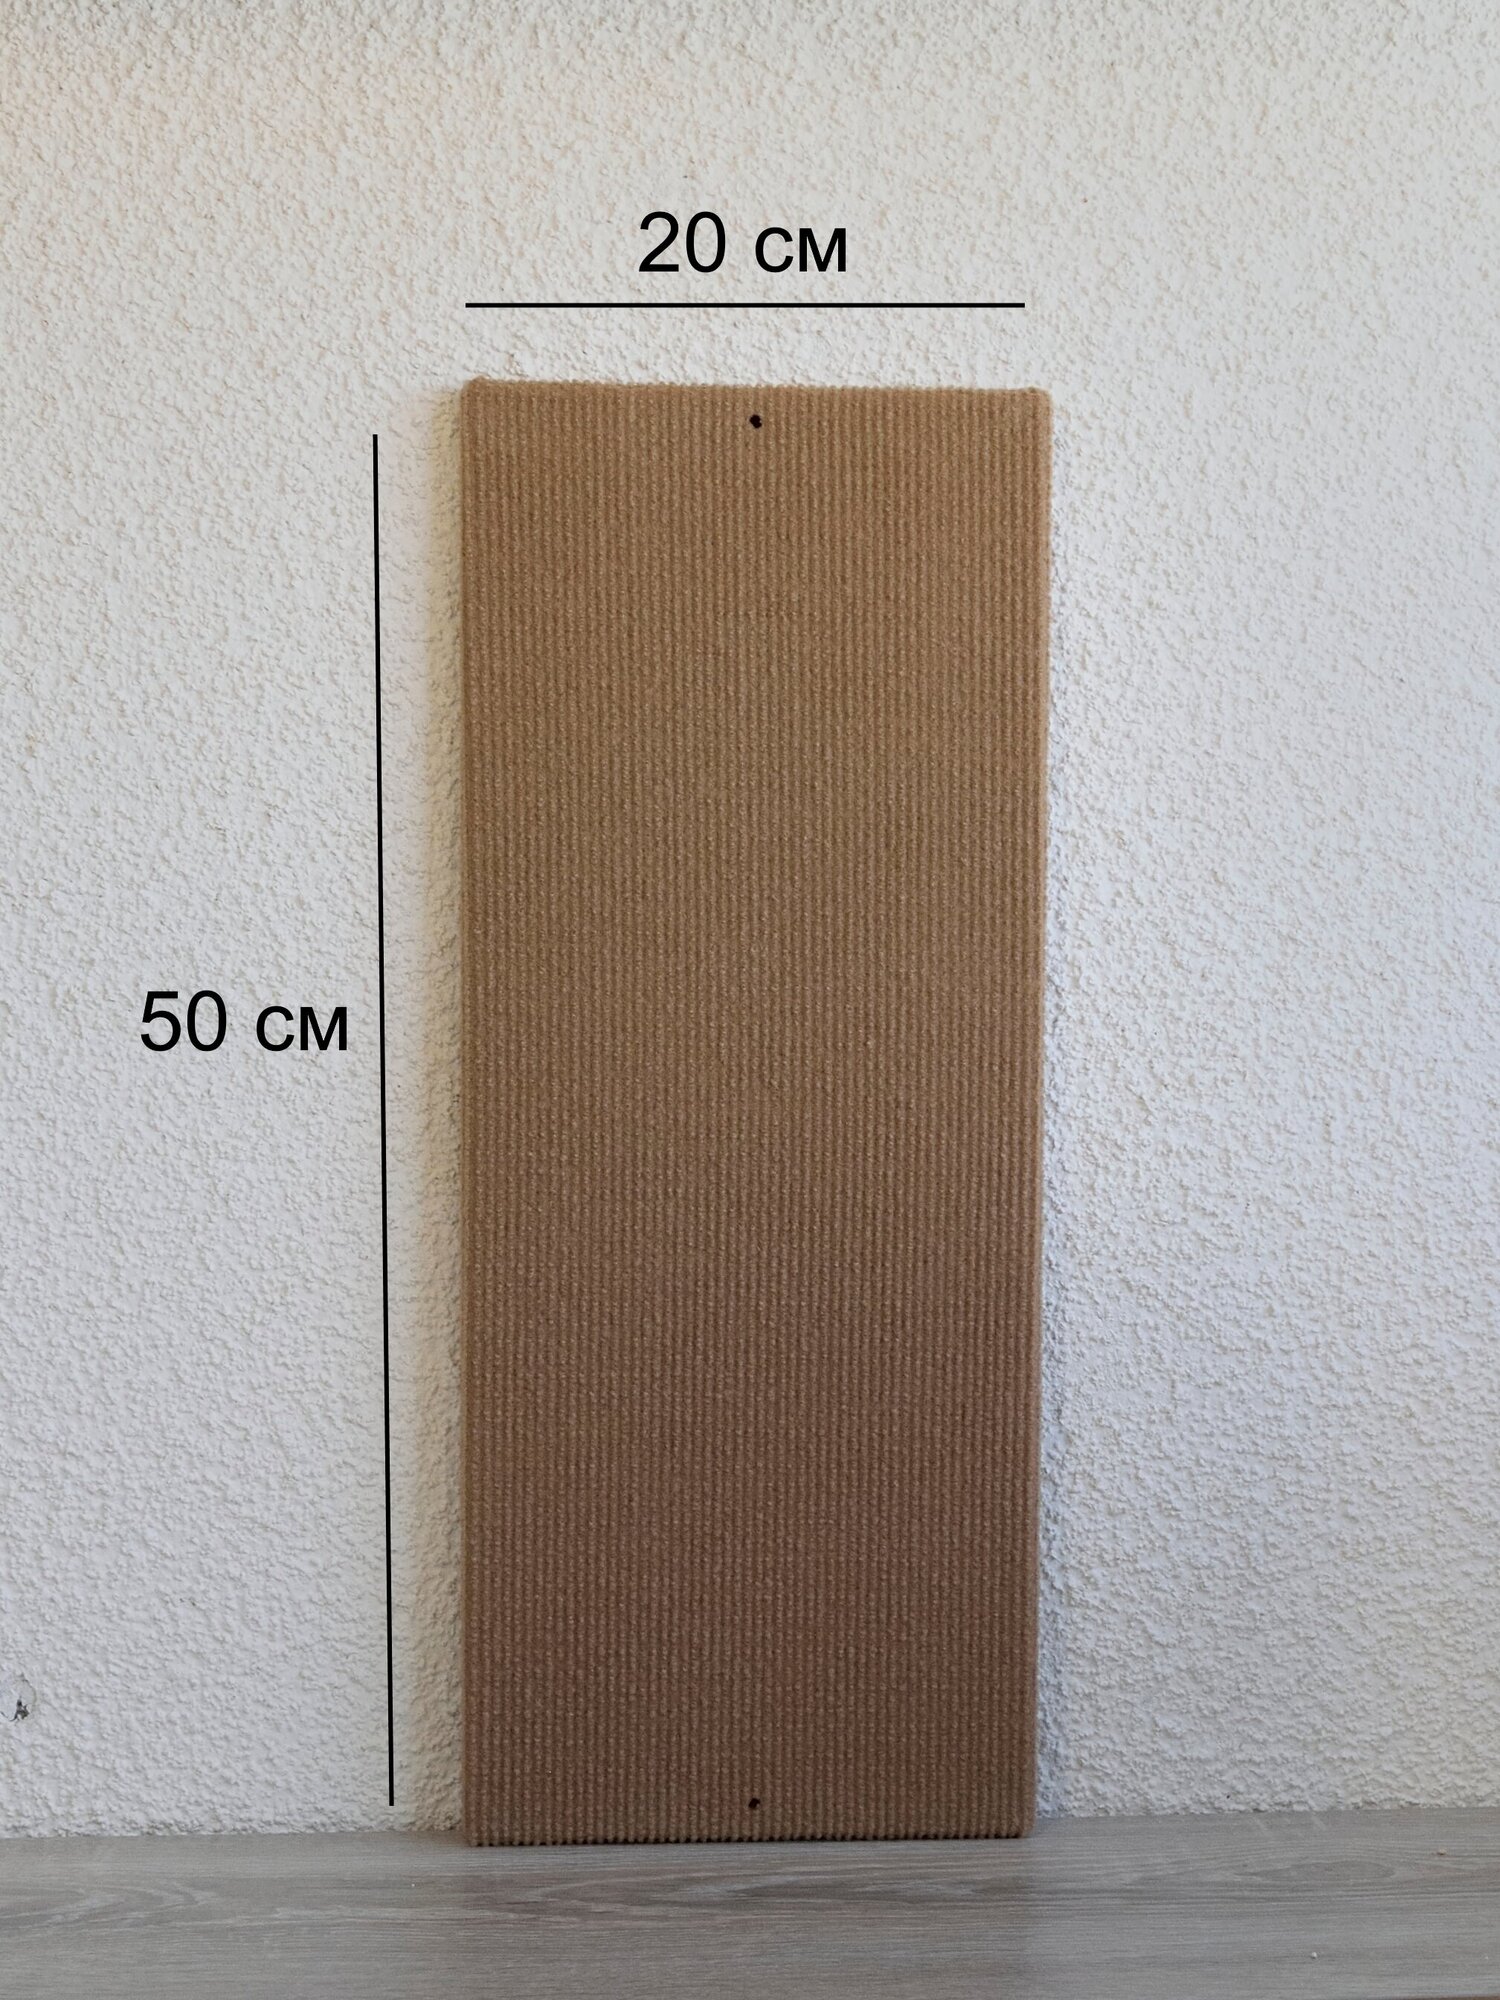 Когтеточка на стену 50см * 20см, цвет коричневый